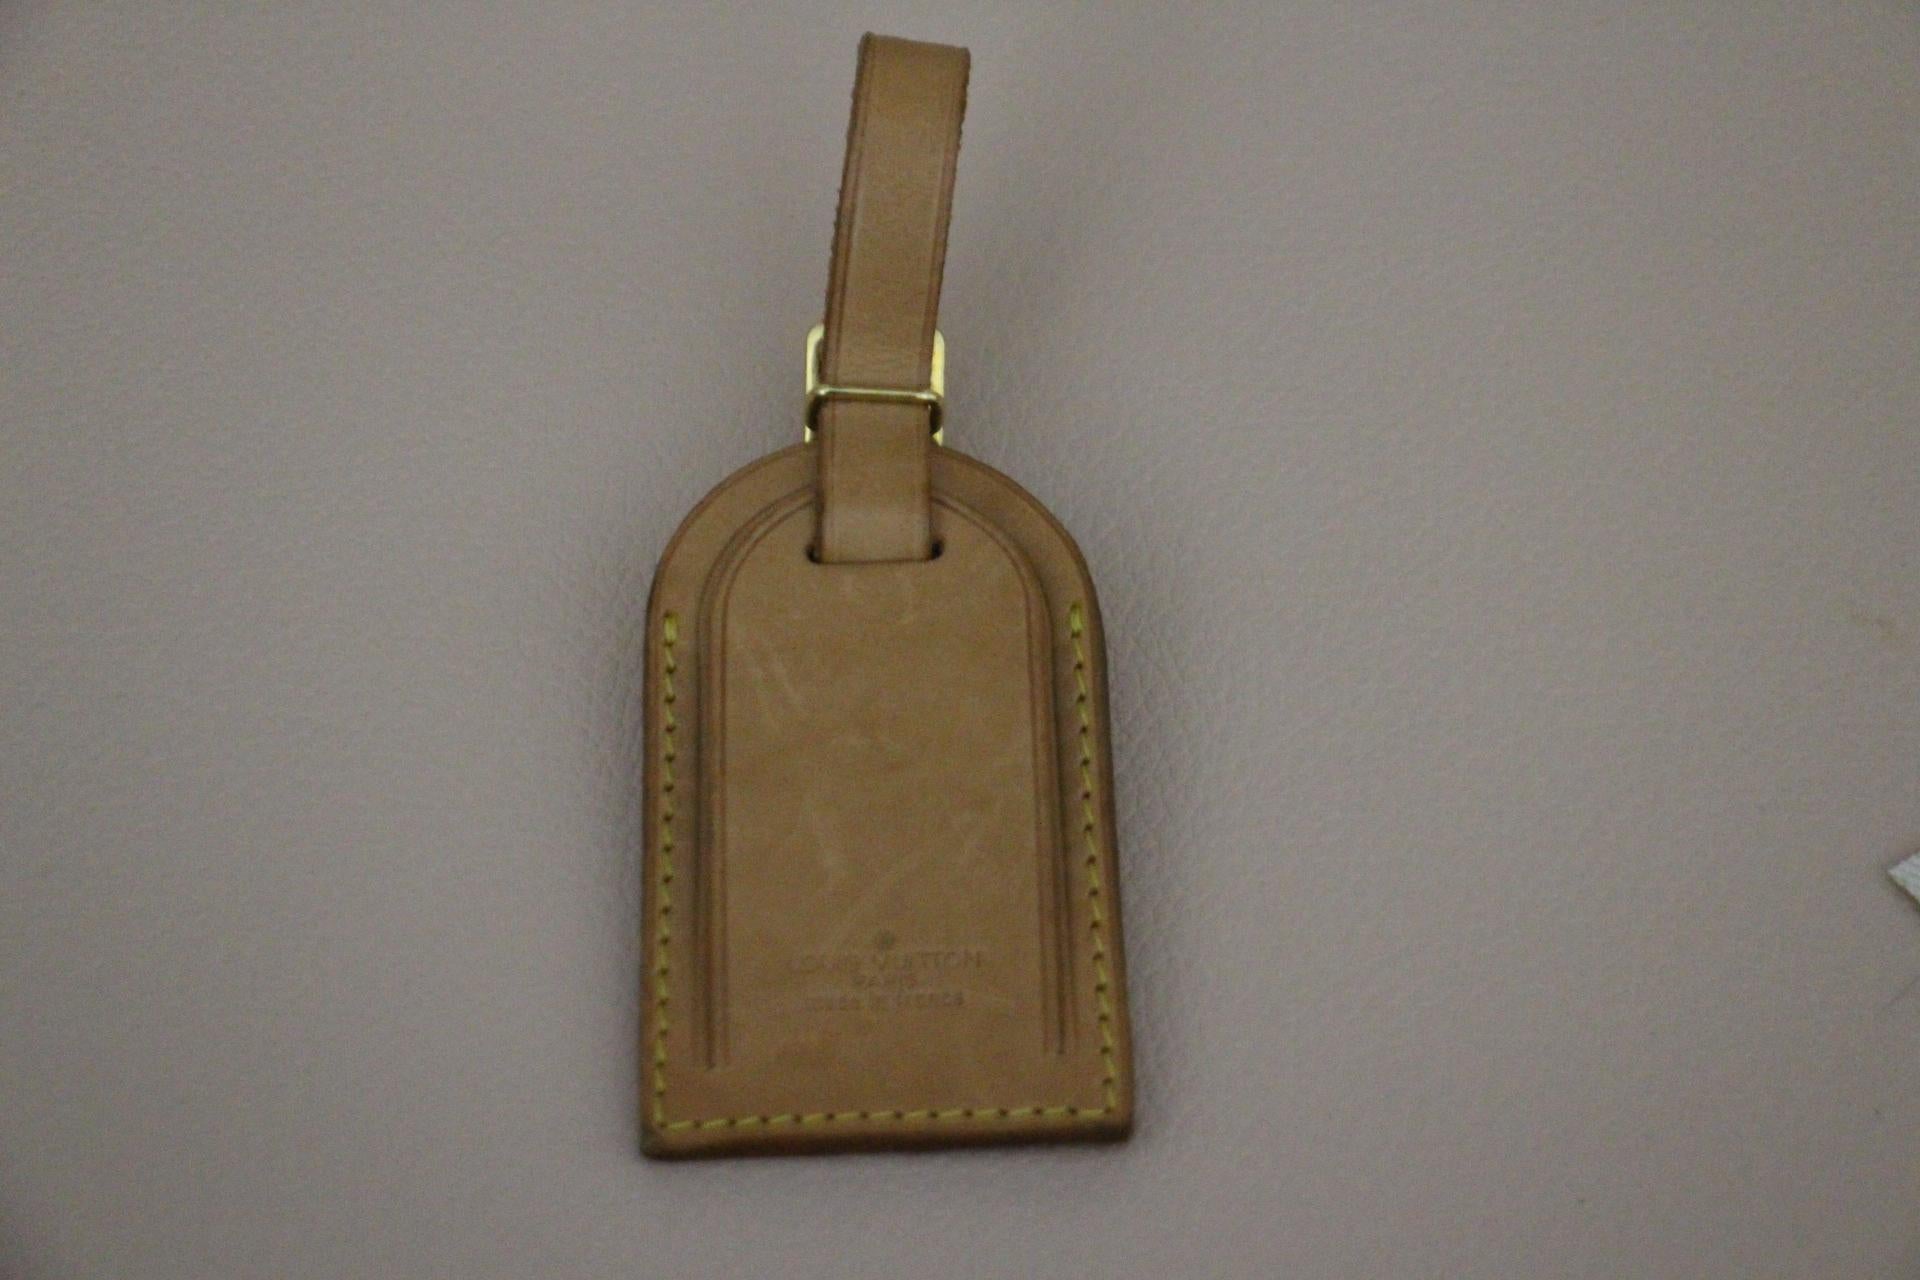  Louis Vuitton Suitcase 80 cm,  80 cm Louis Vuitton Trunk For Sale 9